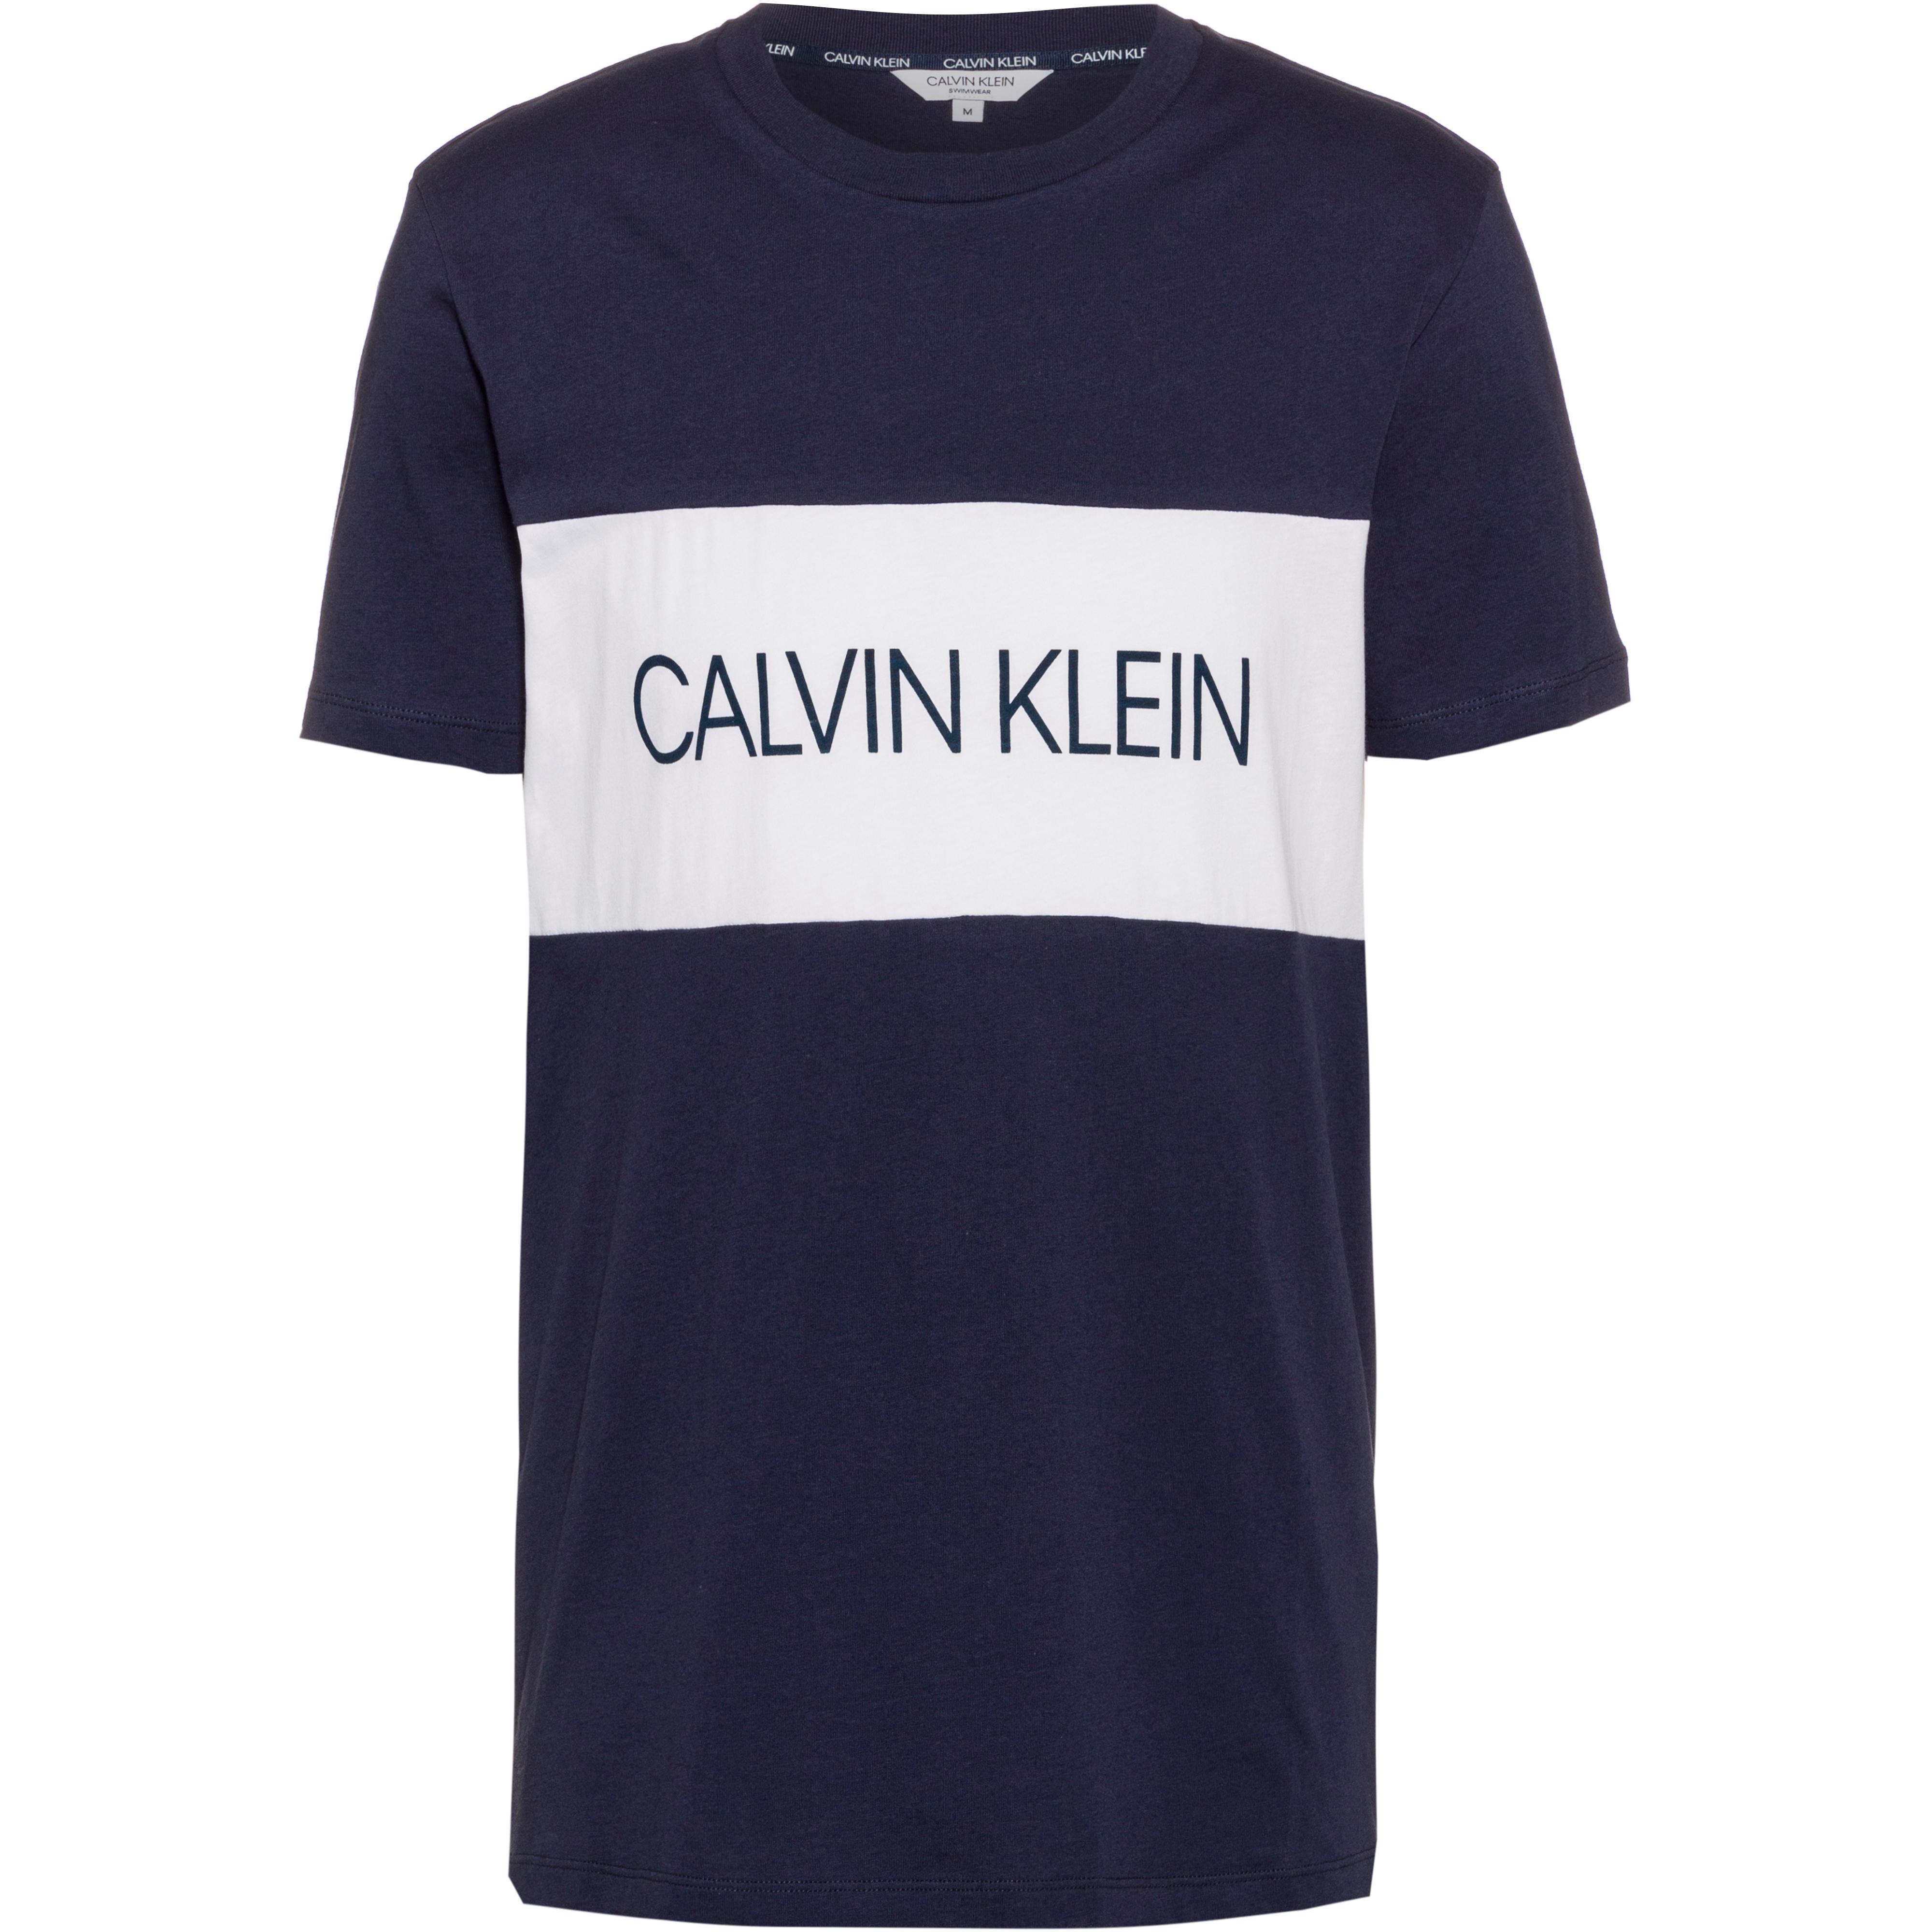 Image of Calvin Klein T-Shirt Herren